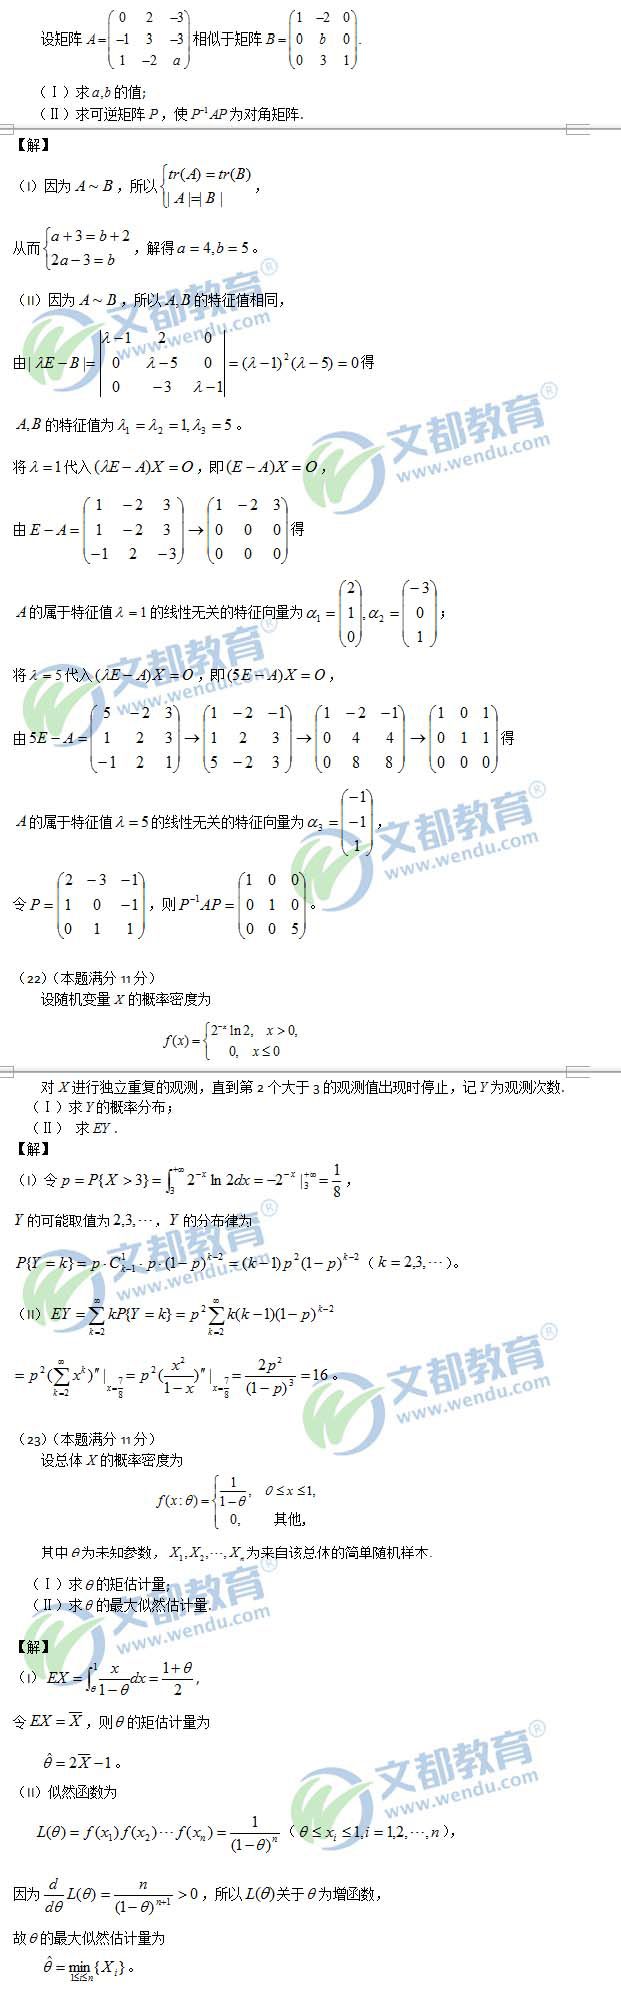 2015考研数学三真题+答案解析(完整版)